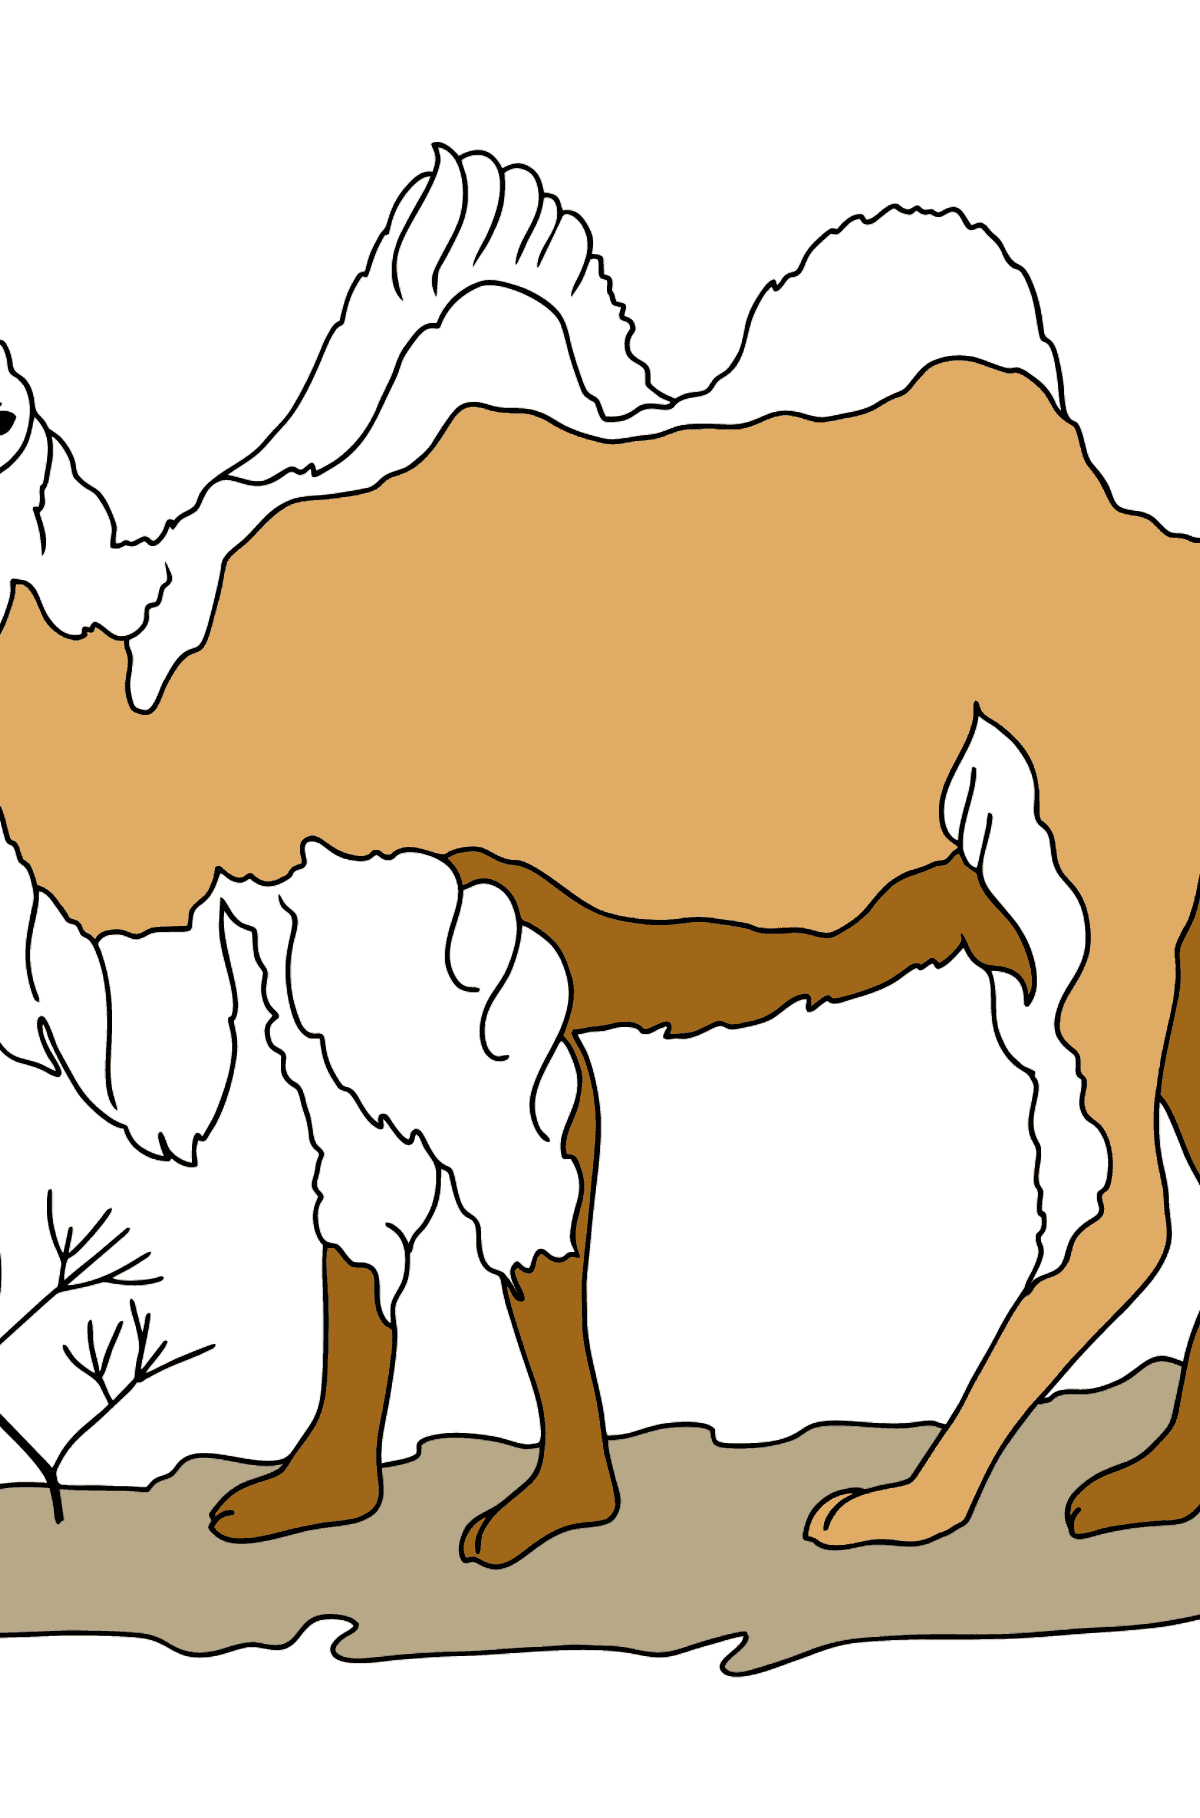 Dibujo para Colorear - Un Camello en el Desierto - Dibujos para Colorear para Niños